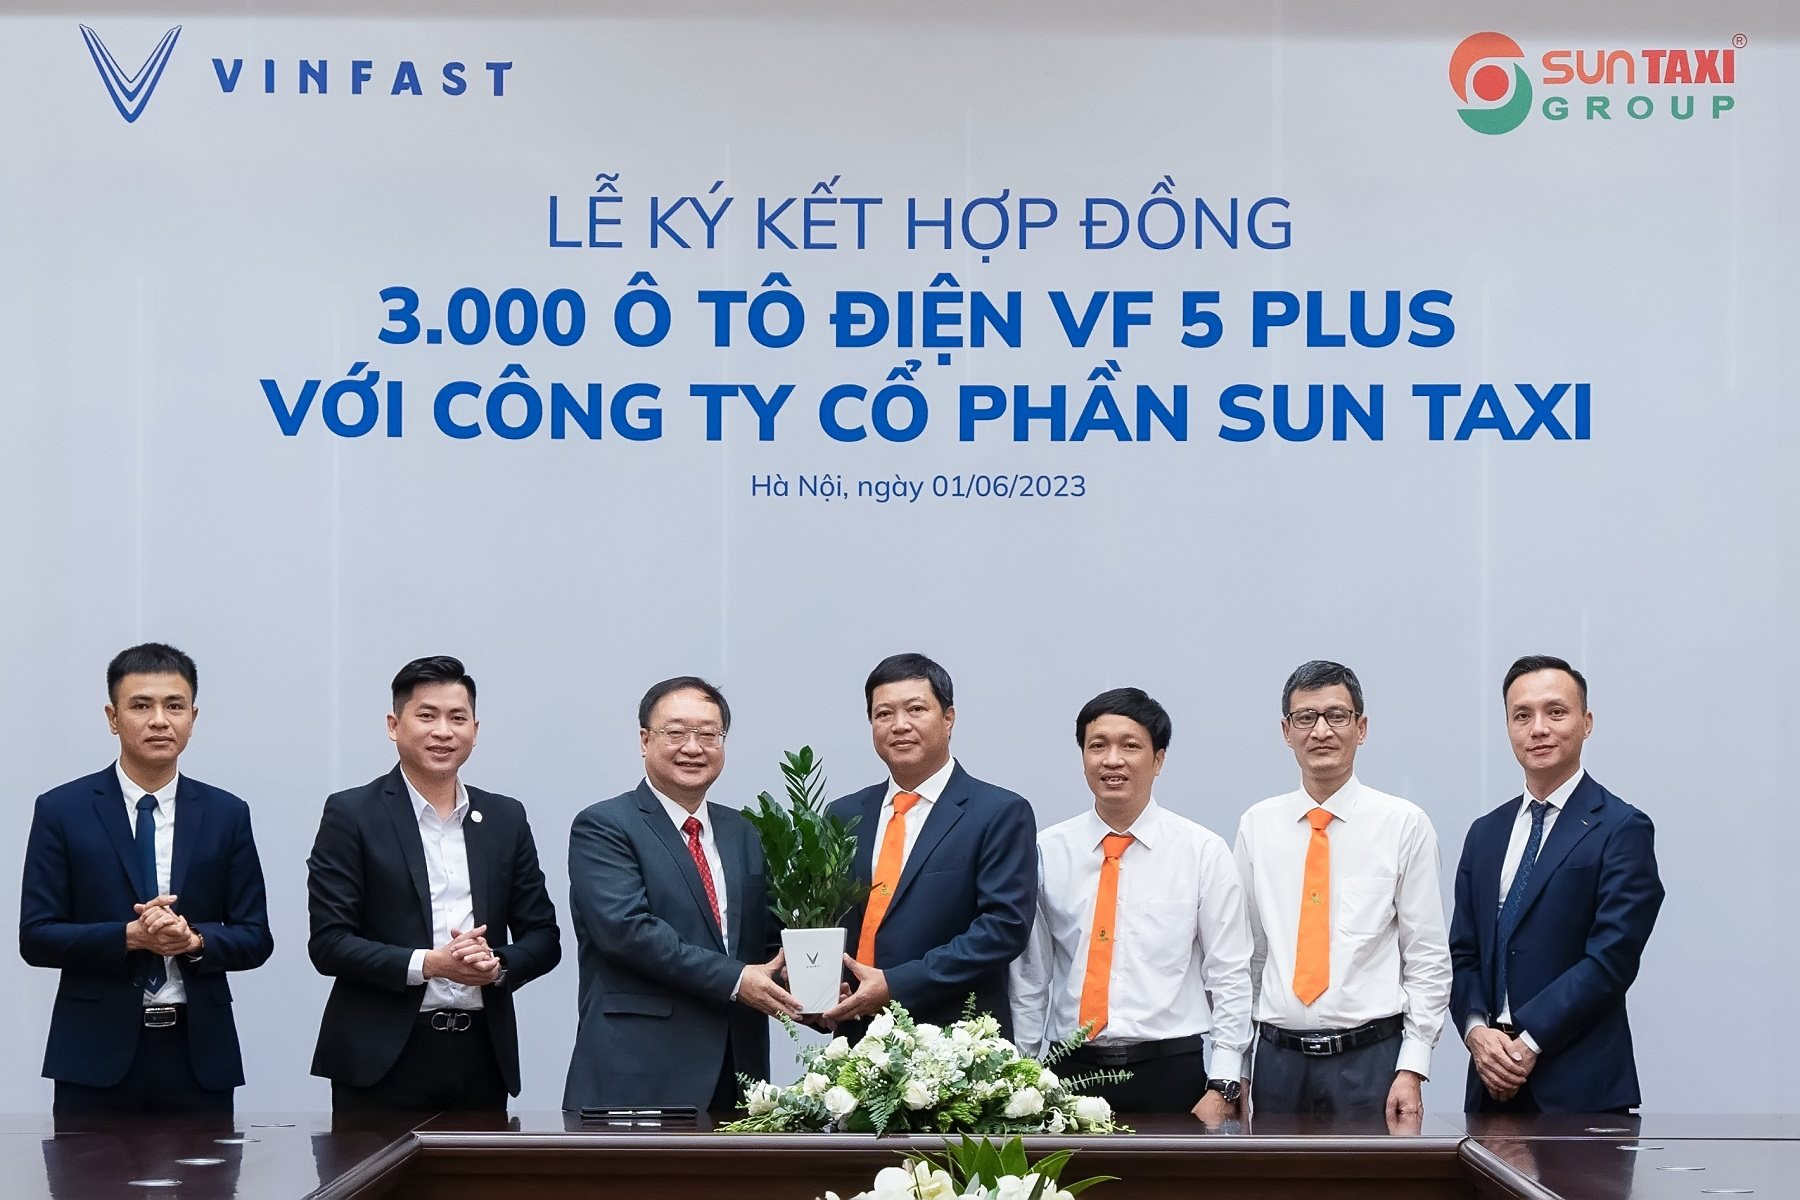 VinFast vừa ký hợp đồng bán xe lớn nhất Việt Nam từ trước đến nay: 3.000 chiếc